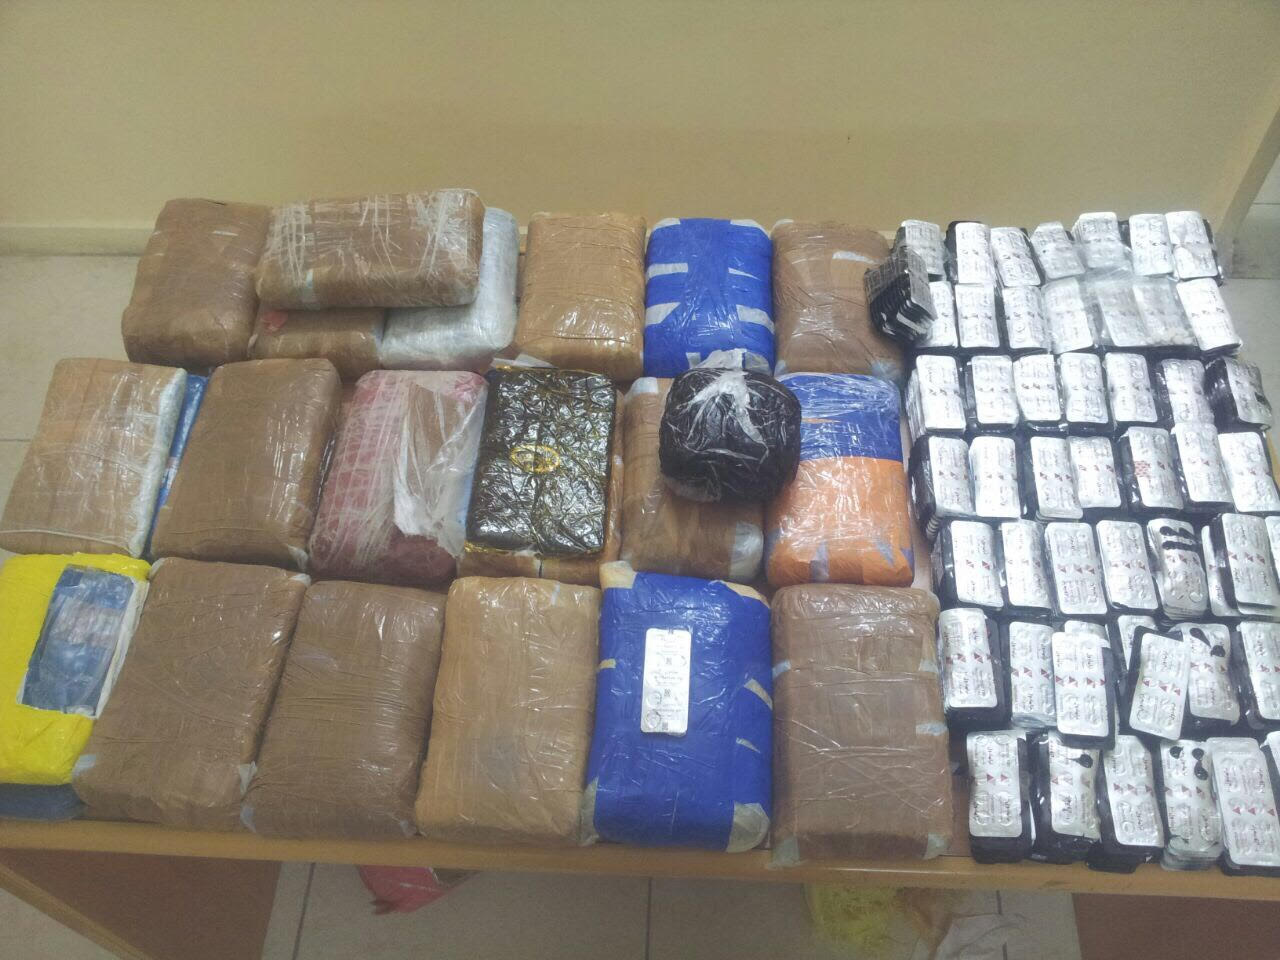 Royal Oman Police arrests international smuggler, seizes 350 kg of drugs